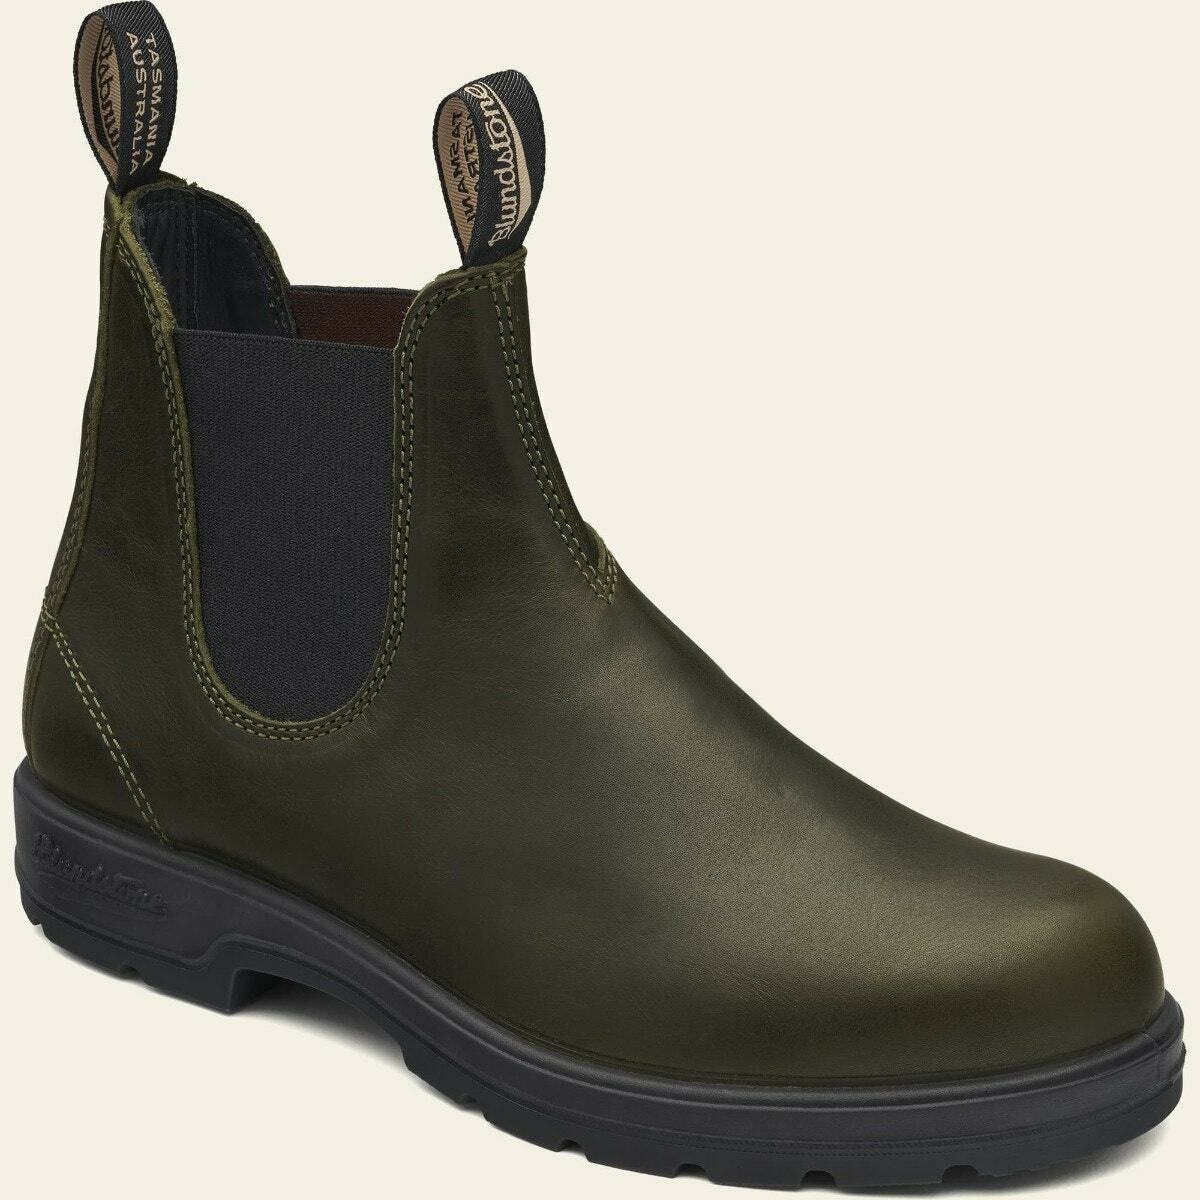 Blundstone Classic Schuhe 2052 Dark Green Chelsea Boots Unisex Grün Stiefel